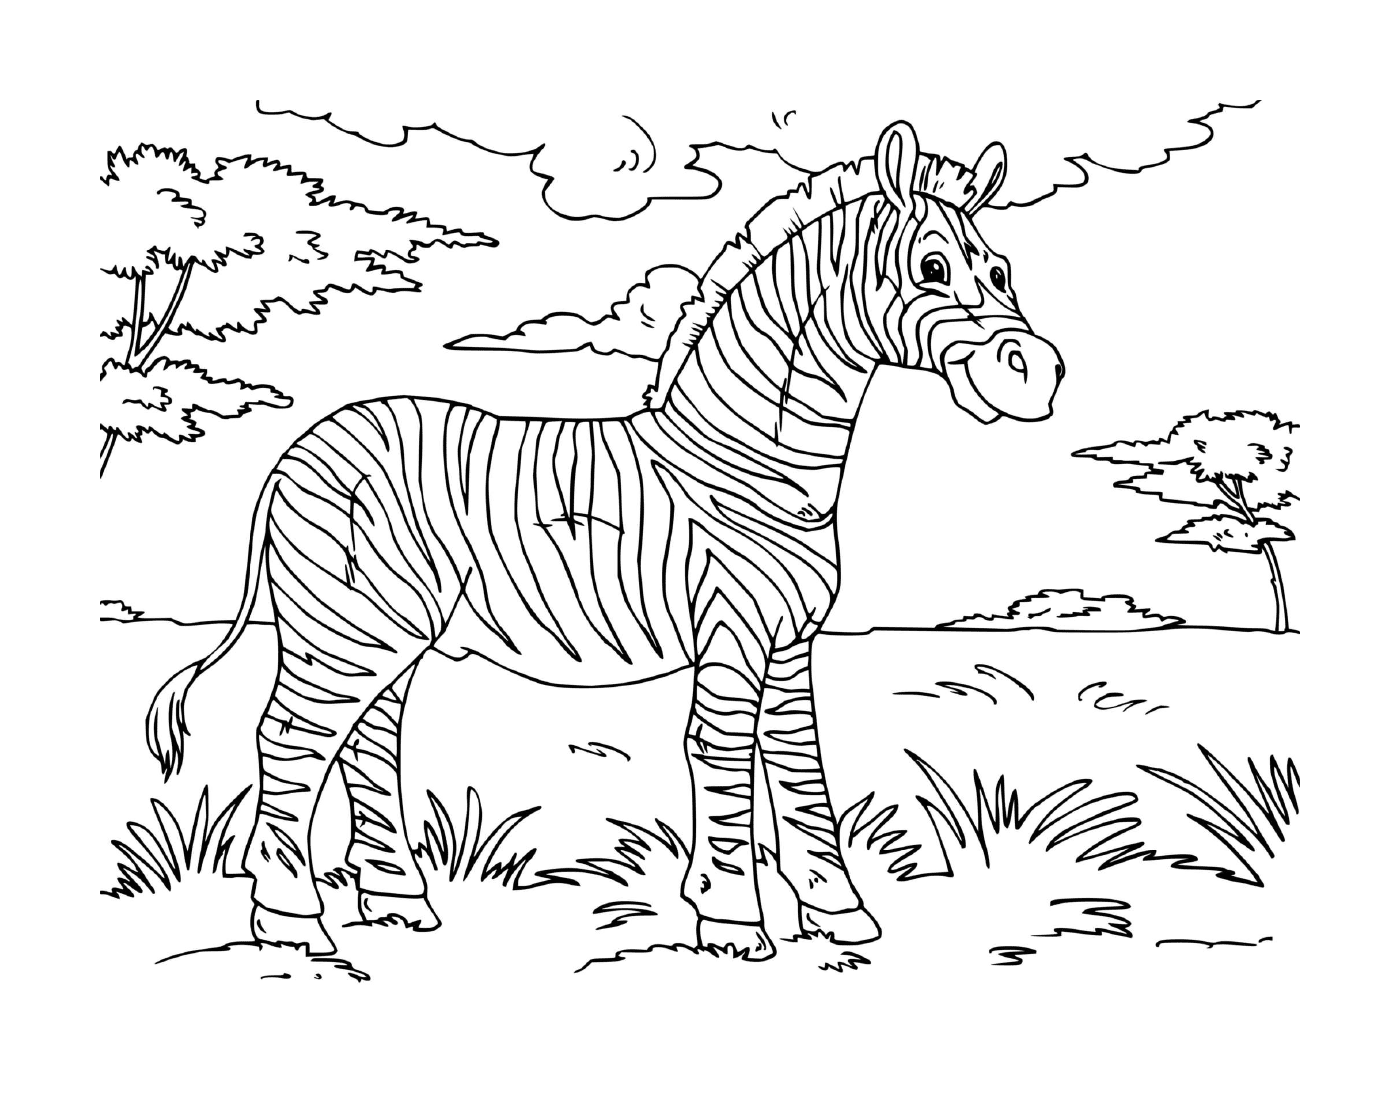  zebra adulto campo de pé 